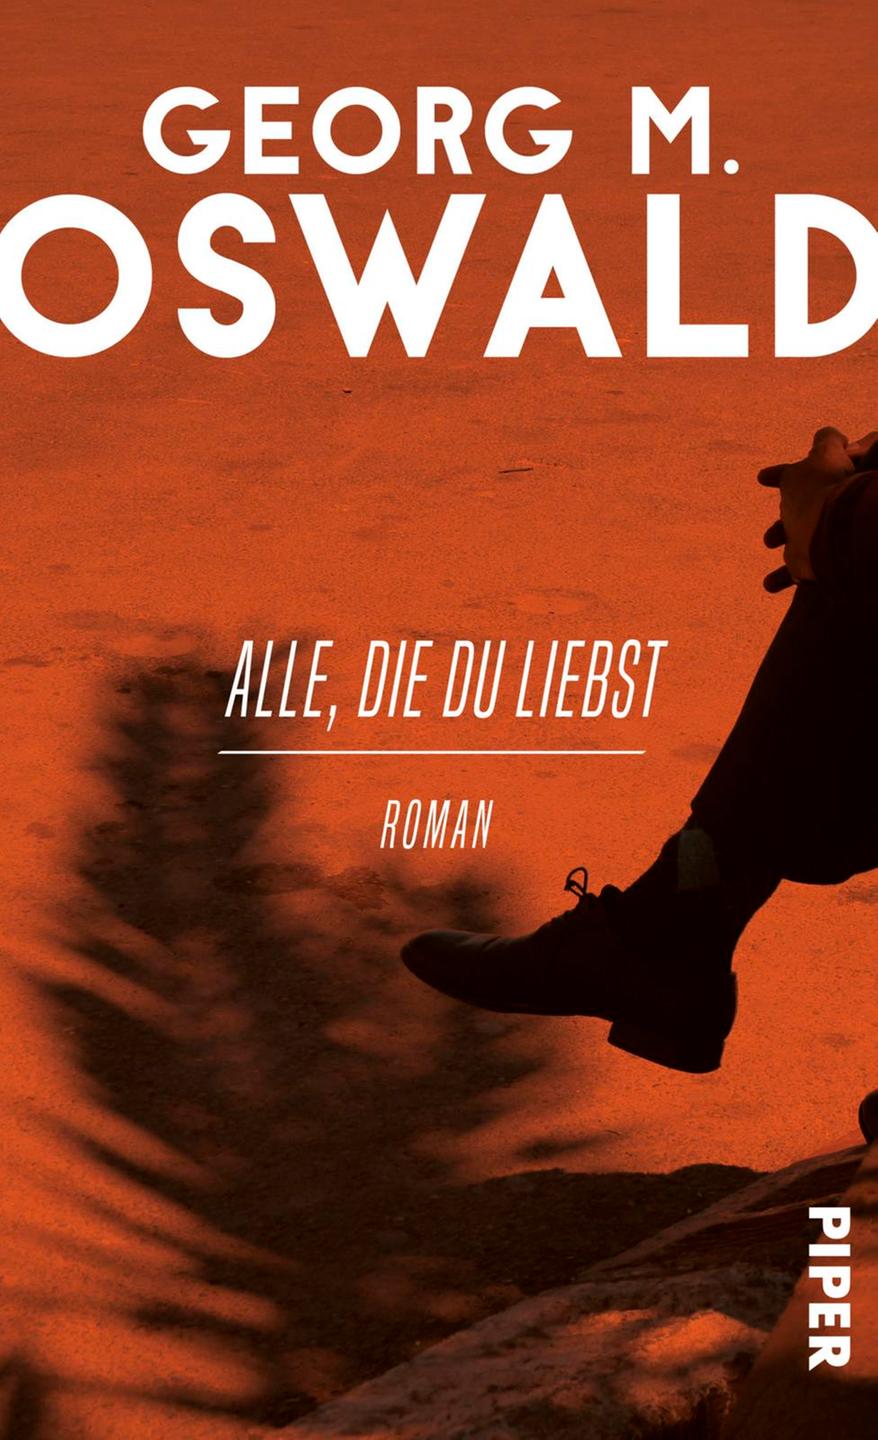 Buchcover: Georg M. Oswald "Alle, die du liebst"